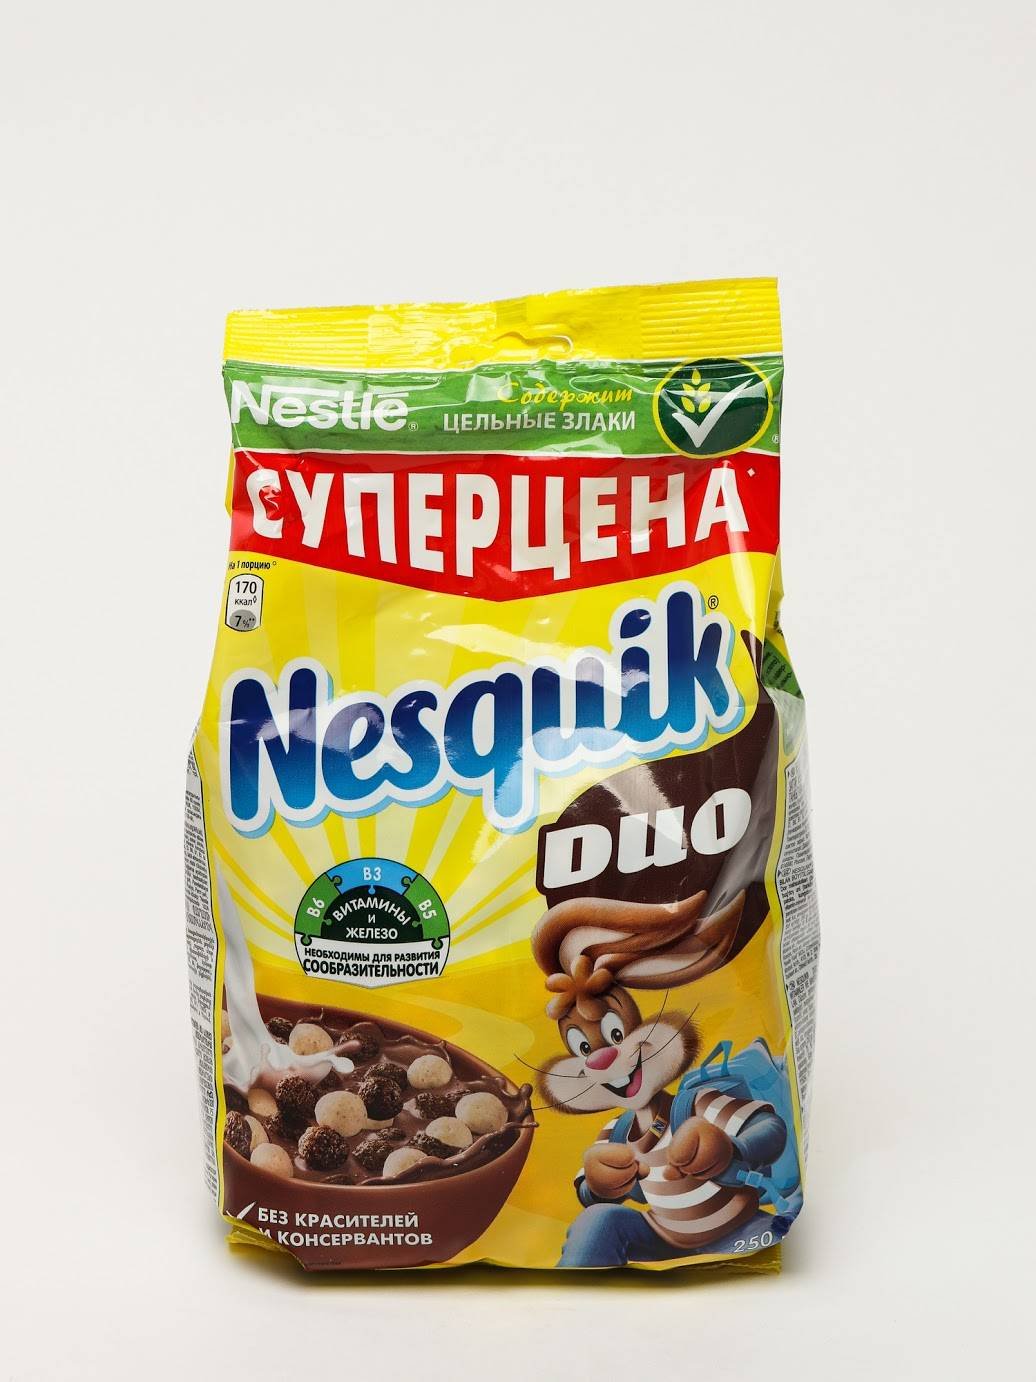 Купить несквик шарики. Готовый завтрак Nestle Nesquik (250гр). Nesquik Duo готовый завтрак, 250г. Готовый завтрак Nesquik 250гр. Несквик дуо 250.